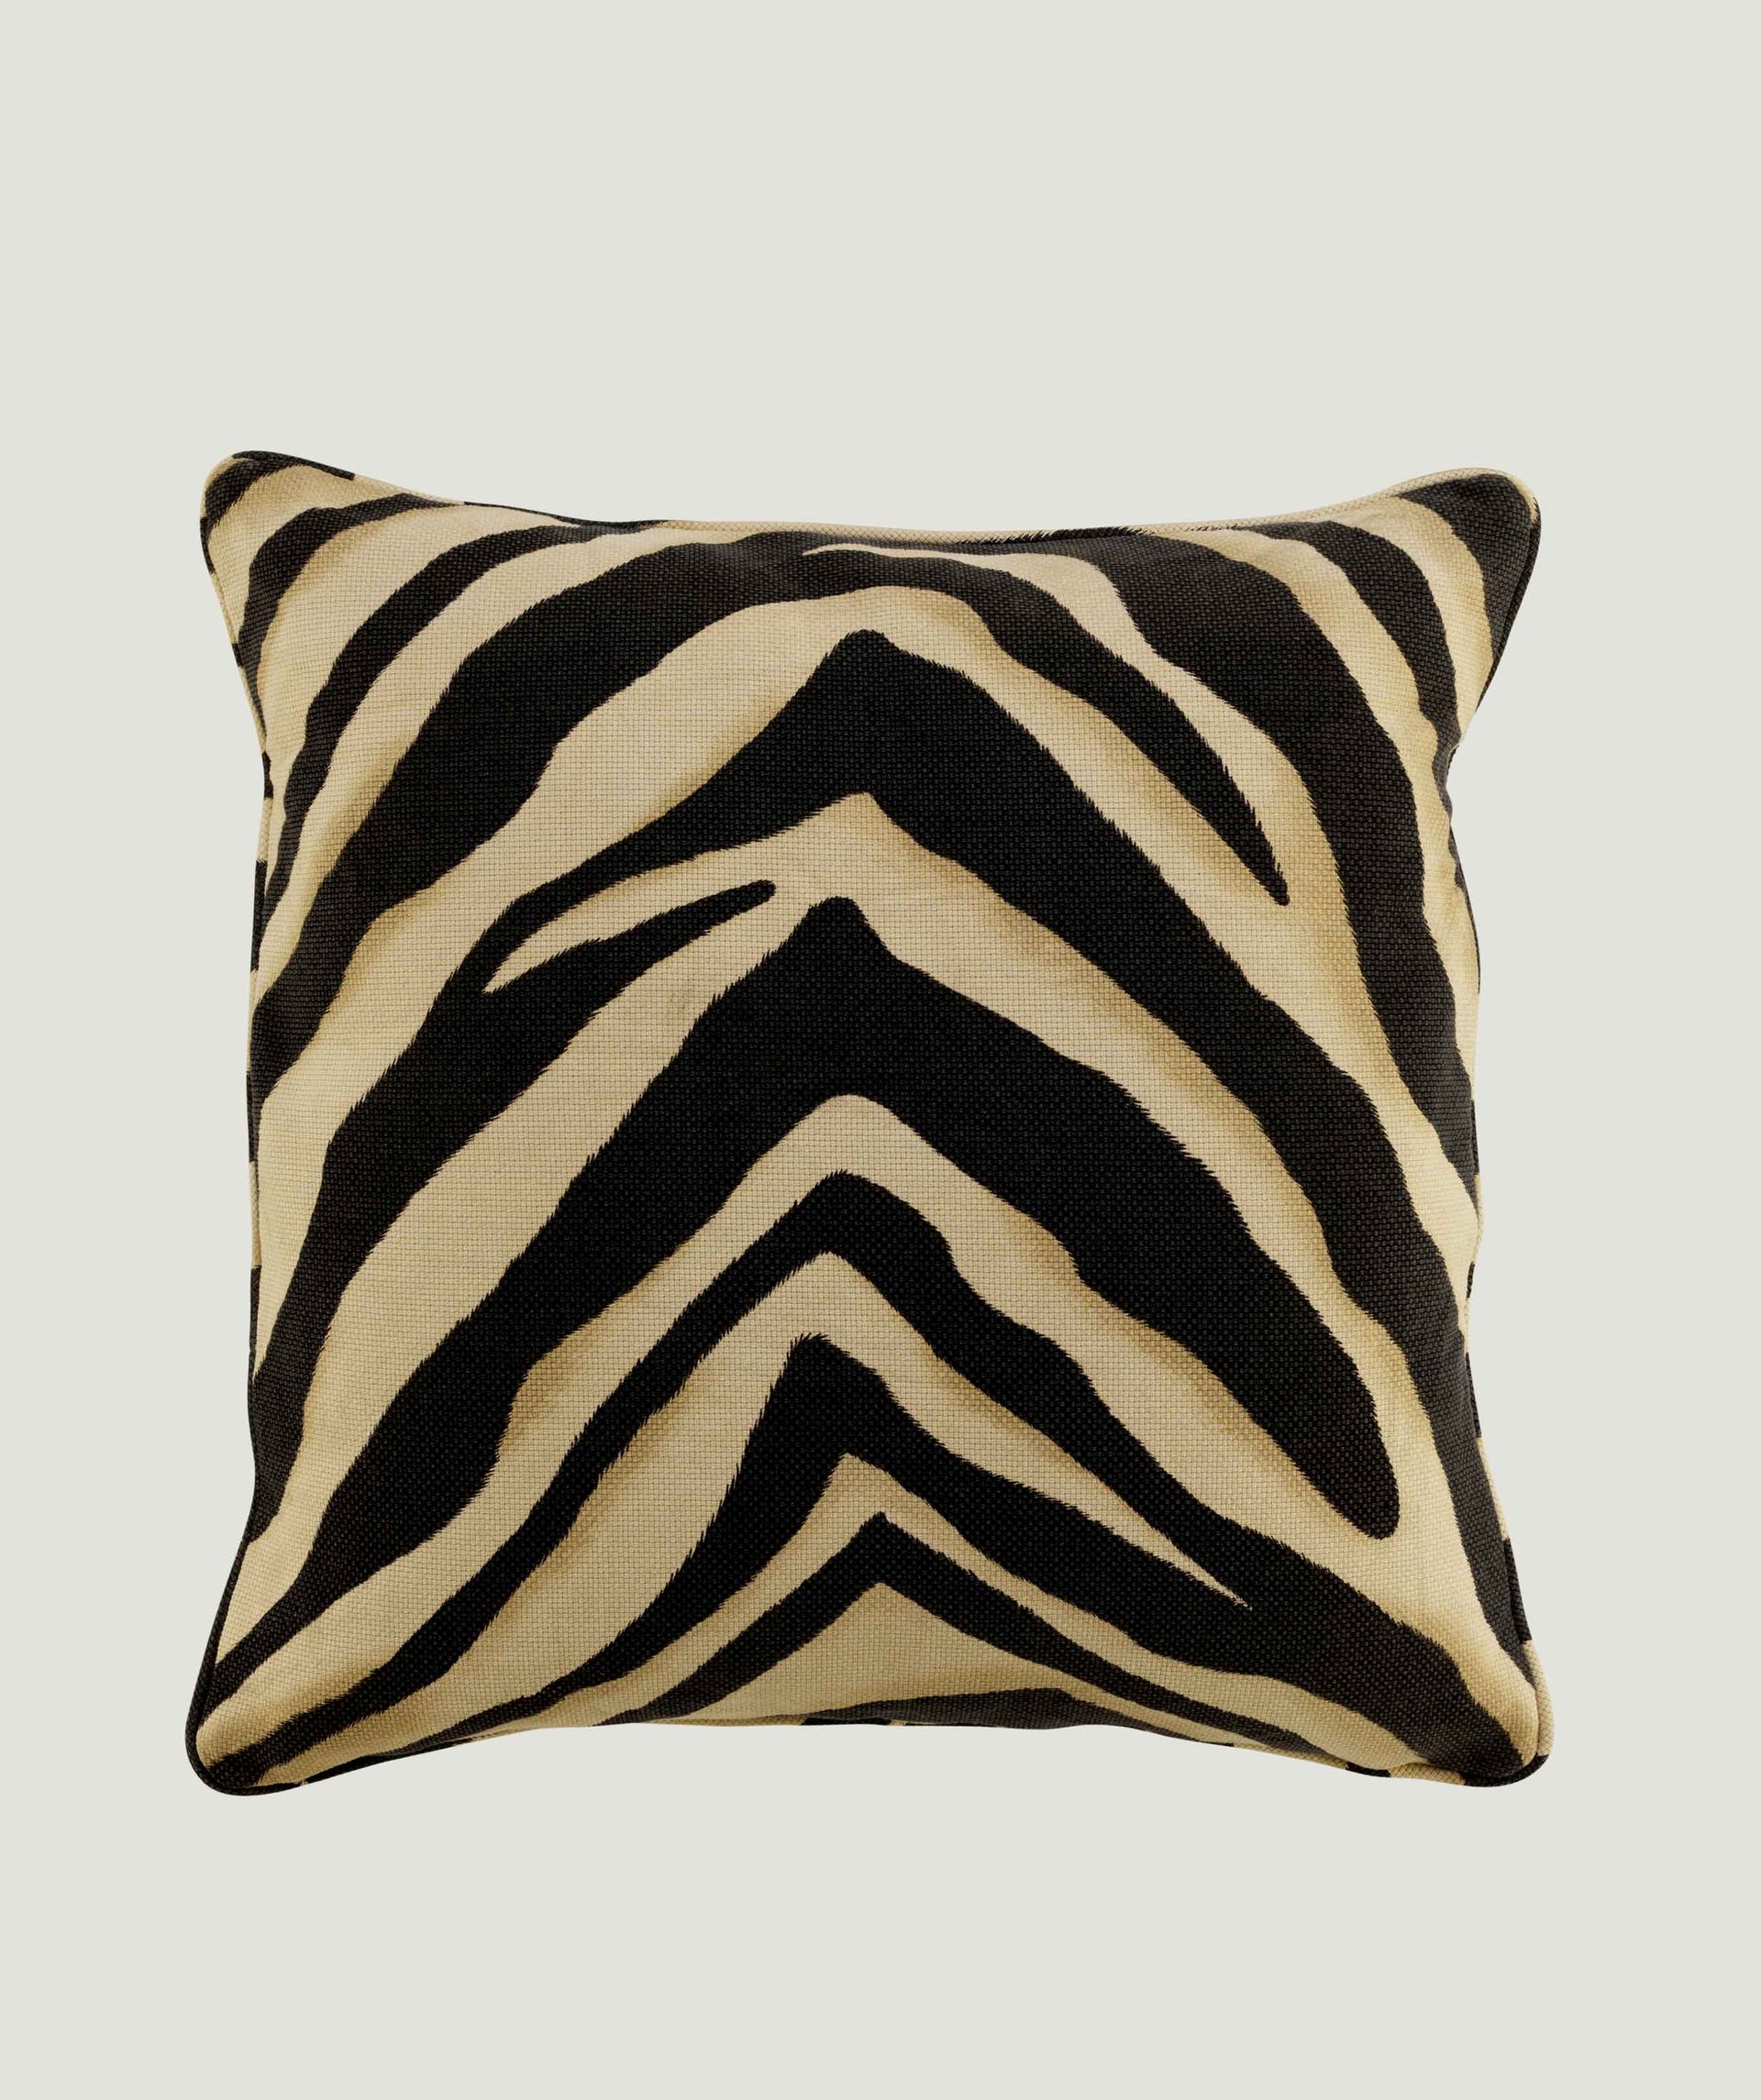 Zebra decorative cushion - Eichholtz